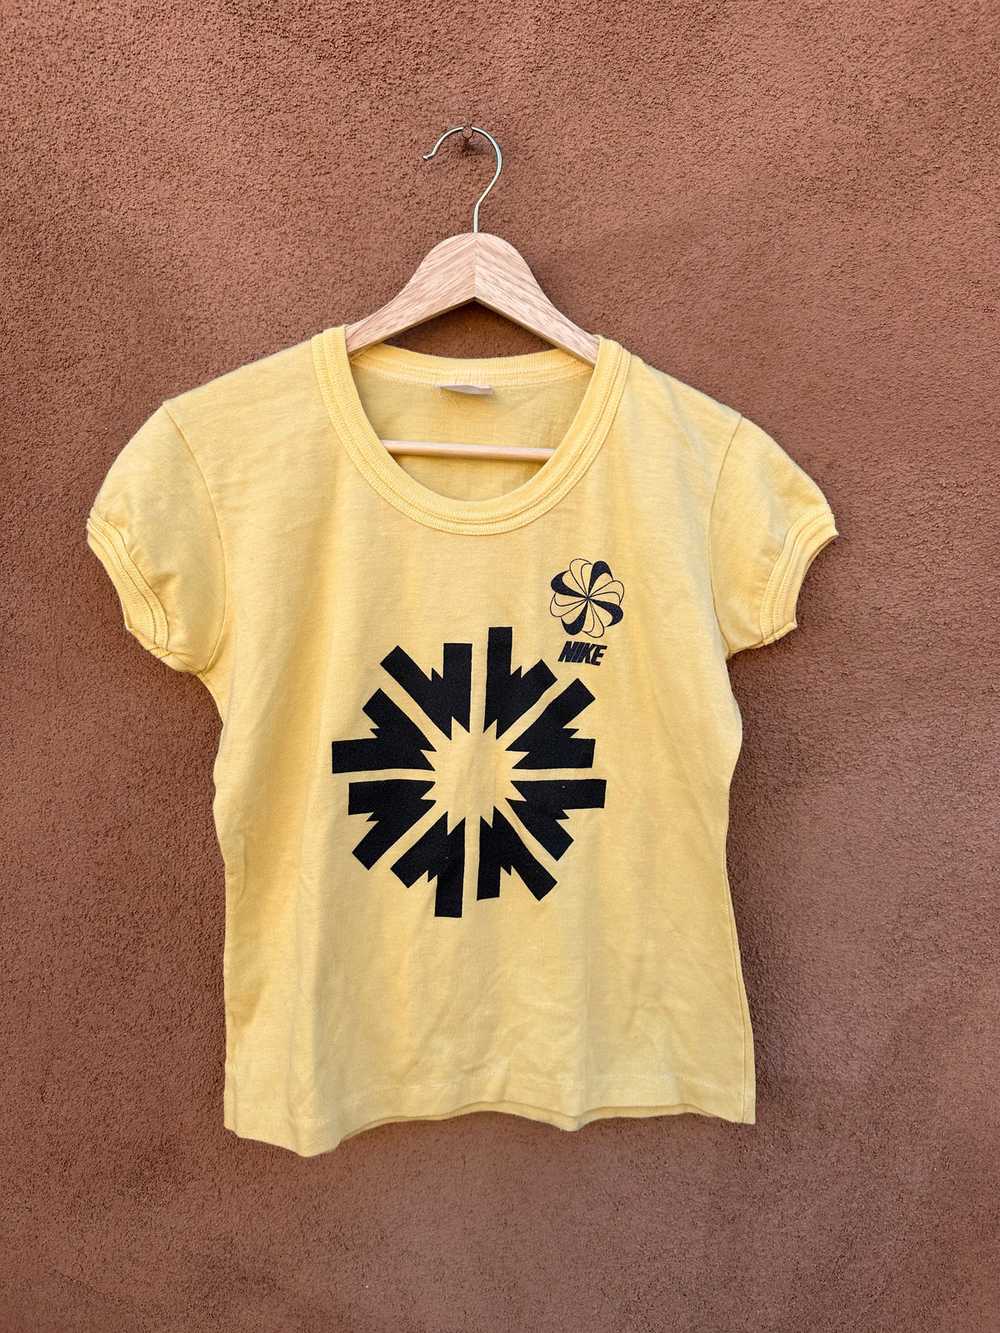 Yellow Nike Pinwheel Ringer T-shirt - 1970's - image 1